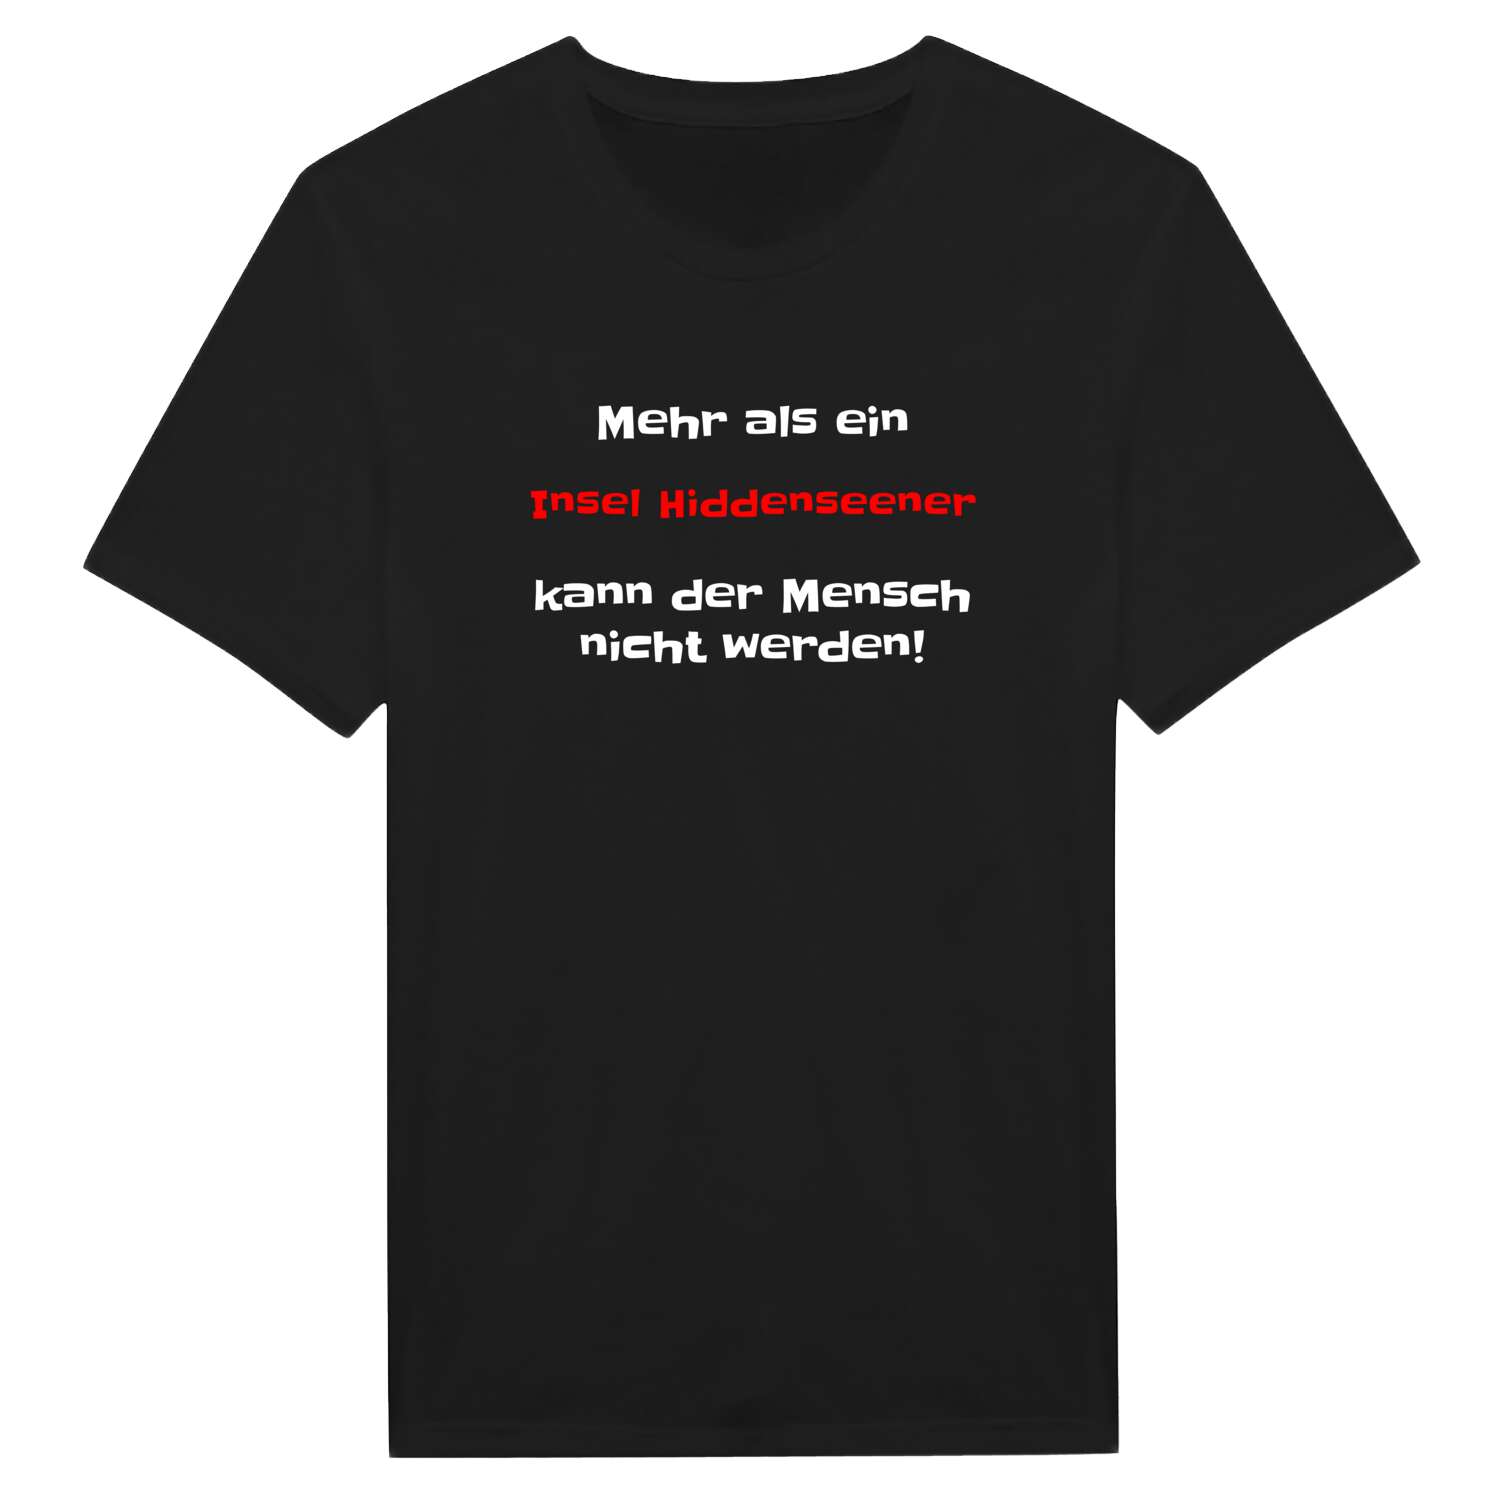 Insel Hiddensee T-Shirt »Mehr als ein«